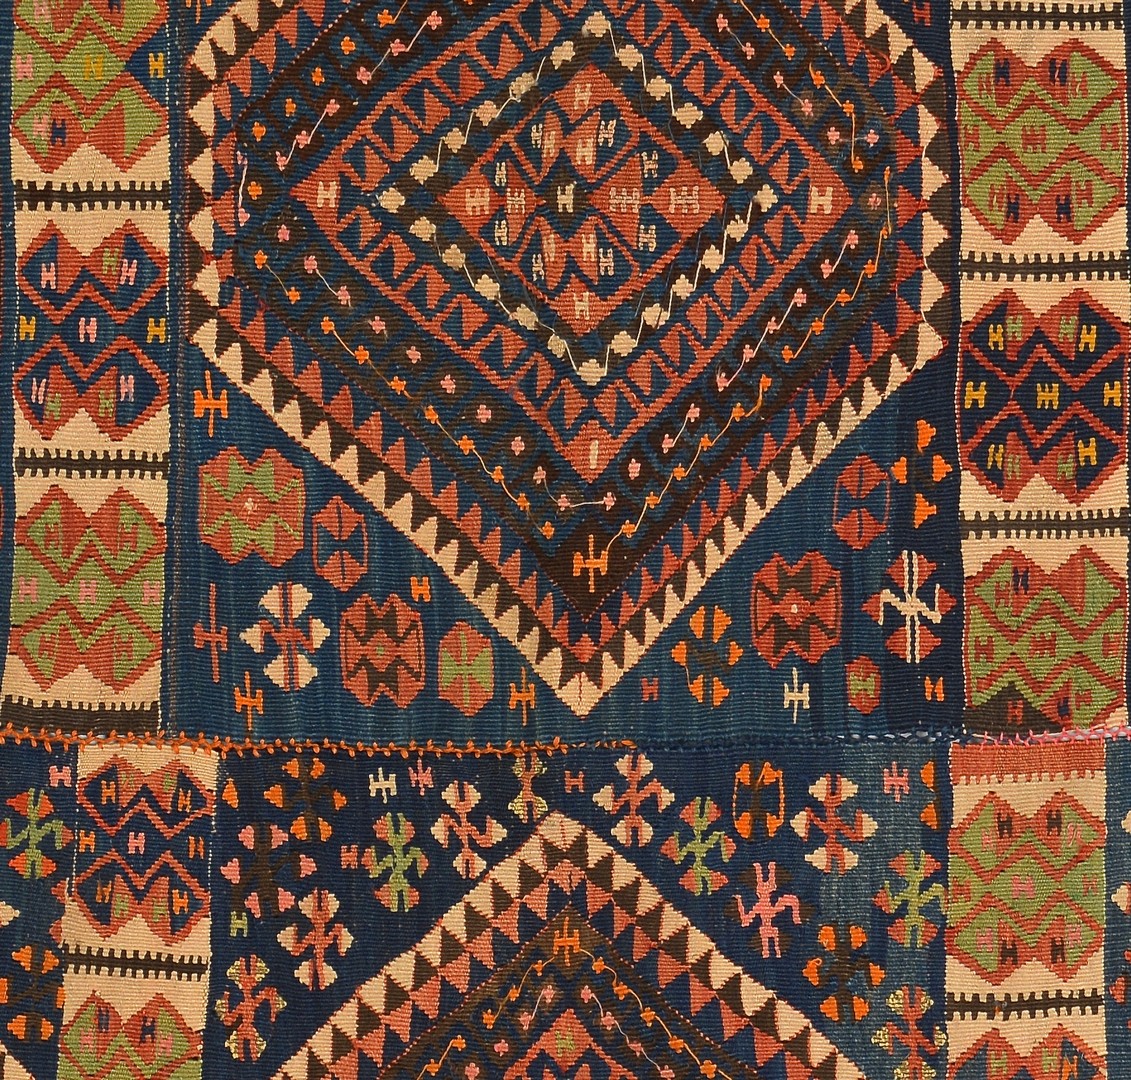 Lot 259: Antique Turkish Yoruk Kilim w/ metallic threads, c